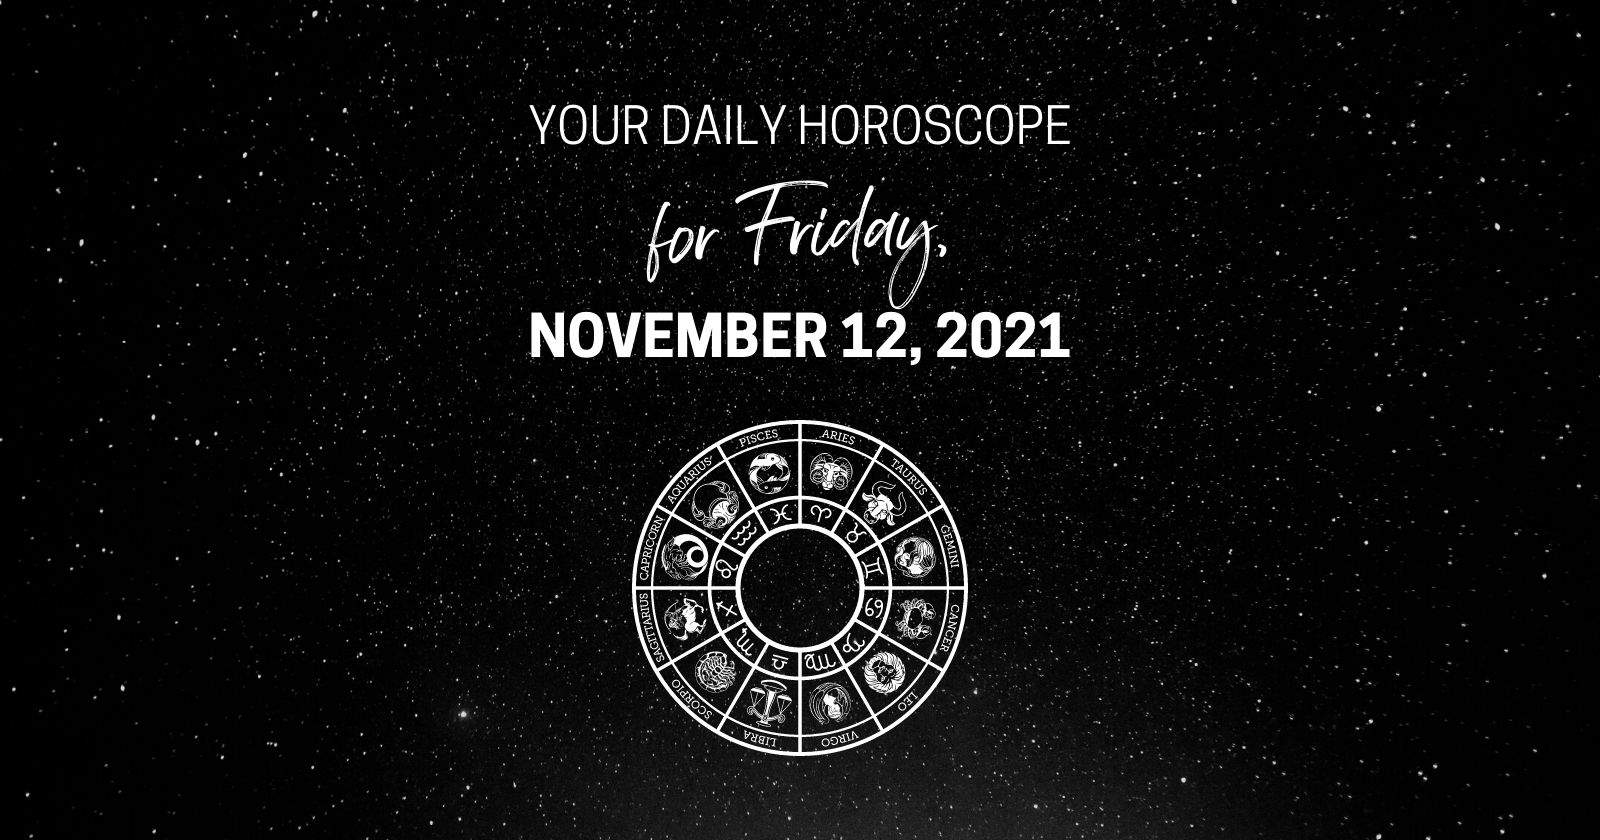 Oroscopo giornaliero per venerdì 12 novembre 2021